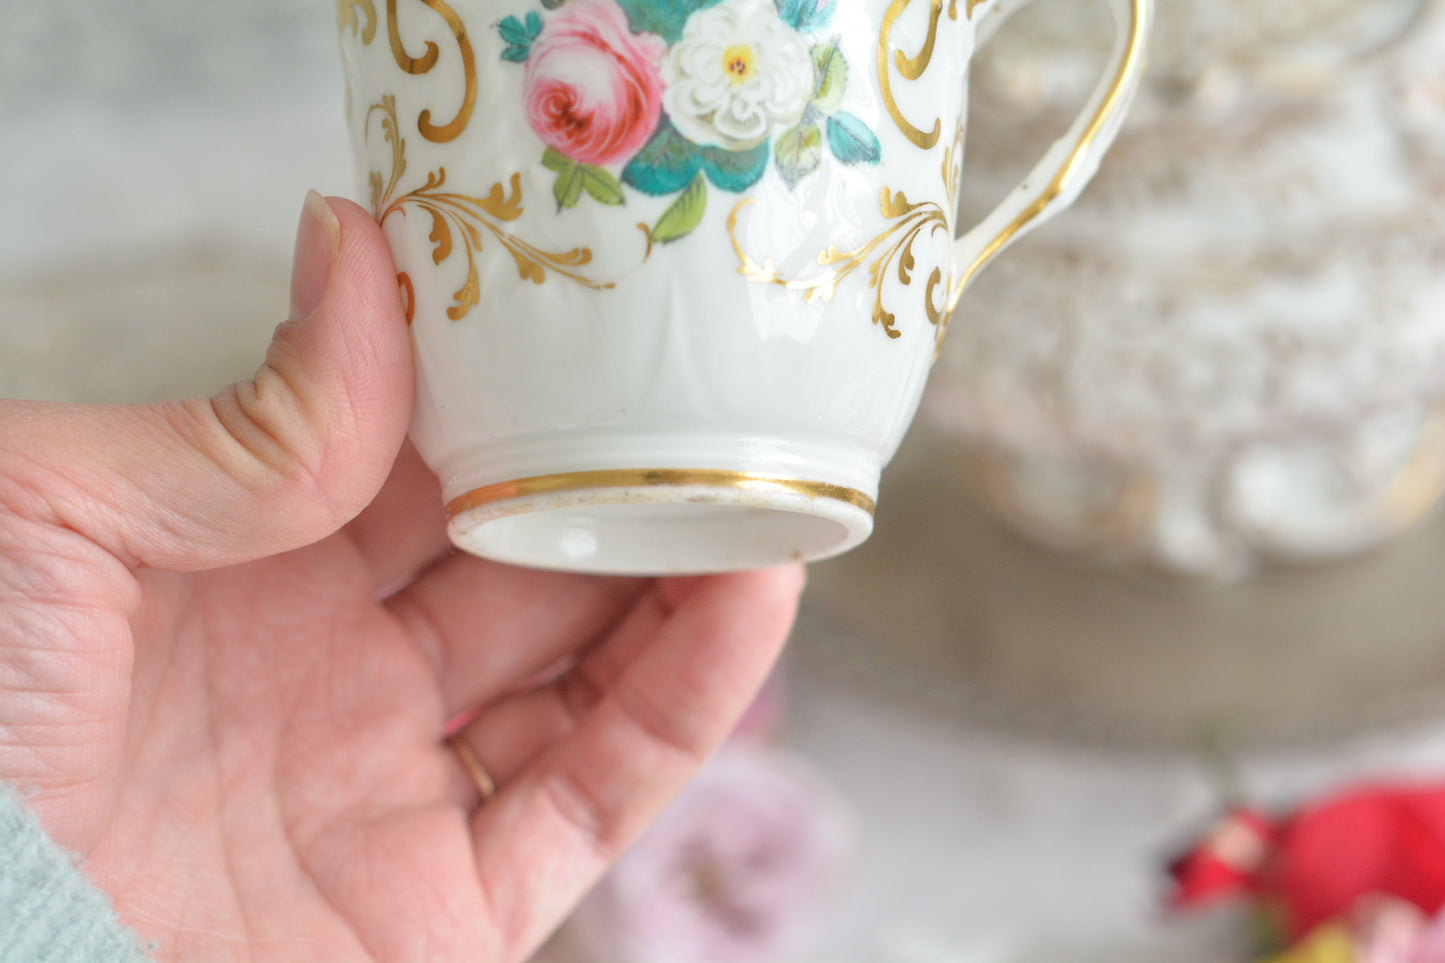 リッジウェイのフォリエイジシェイプのカップ&ソーサー。ハンドル部分には葉っぱの模様がついていてとても可愛らしいシェイプで、リッジウェイのお品の中でも人気の高いシリーズの１つ。こちらは、ハンドペイントでピンクと白のバラが可愛らしく描かれています。金彩と白磁との美しいコントラストに薔薇の花が引き立ちます。 優雅なティータイムにぴったりのカップです。